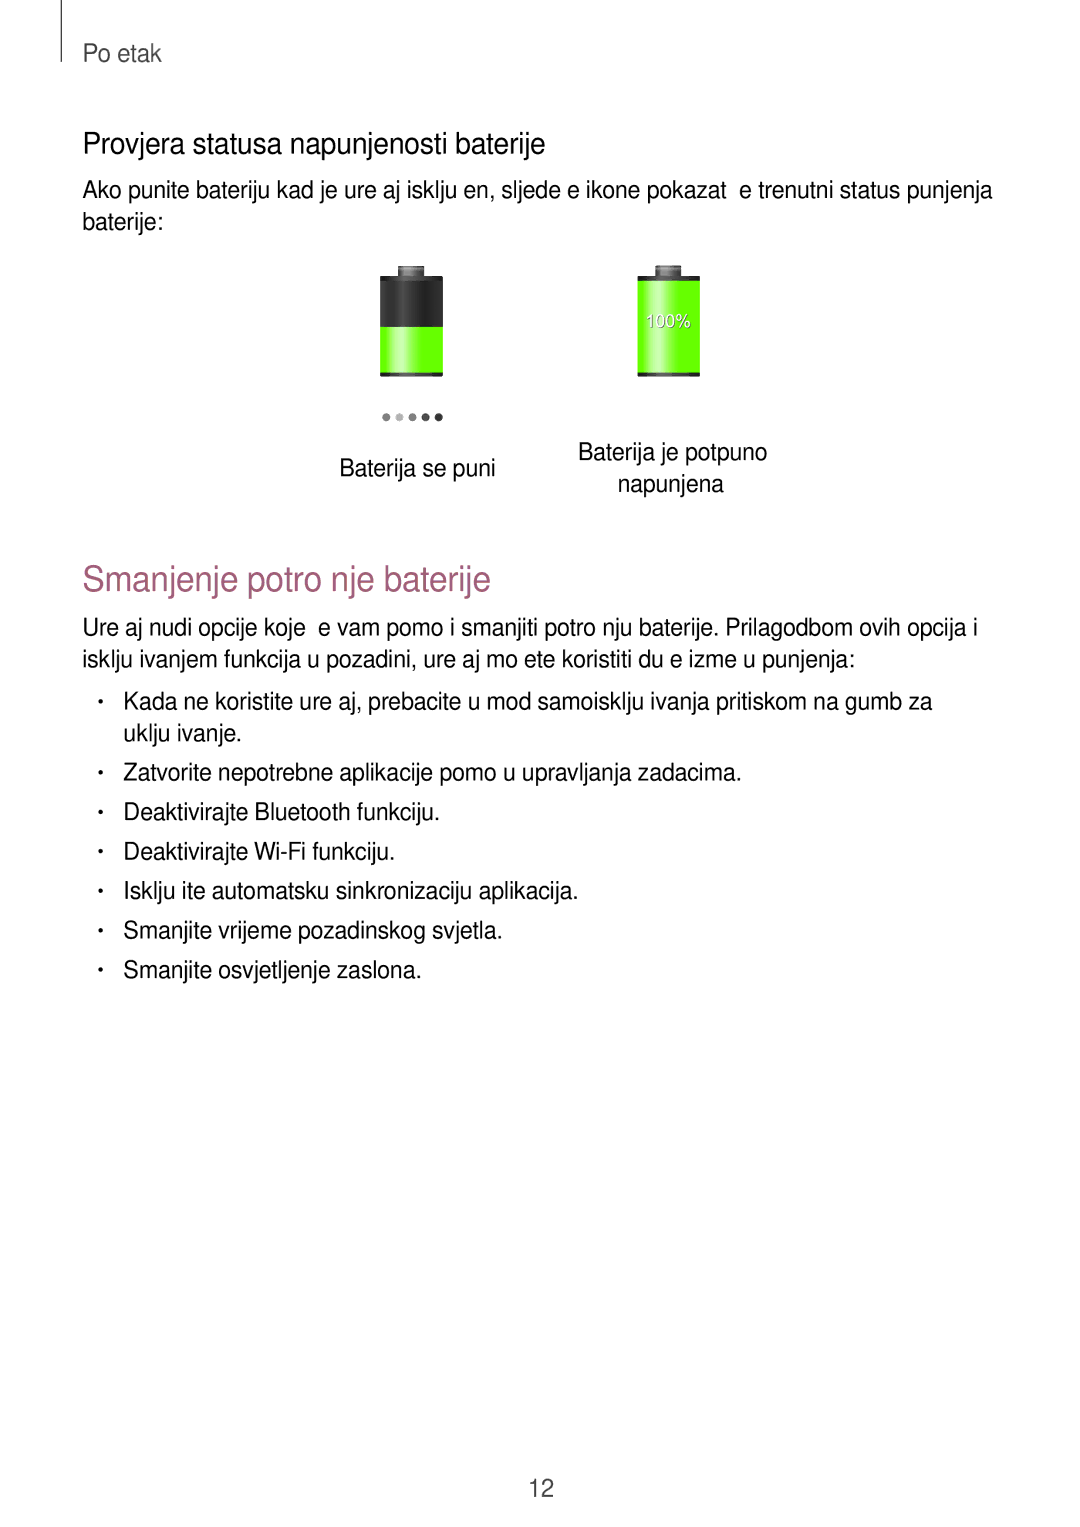 Samsung GT-N8010EAATRA, GT-N8010ZWATRA, GT-N8010GRATRA Smanjenje potrošnje baterije, Provjera statusa napunjenosti baterije 